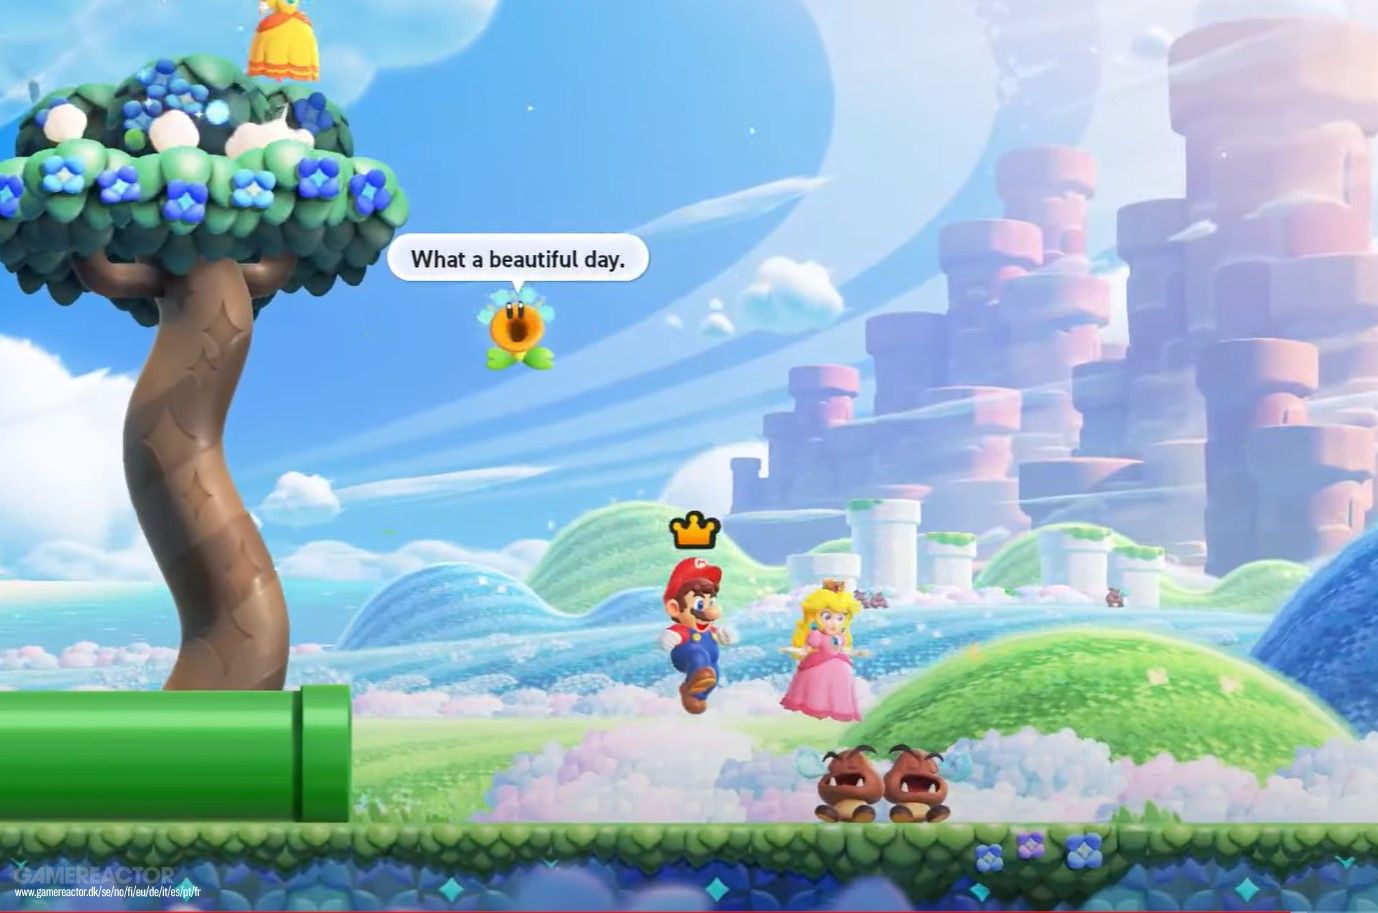 Dicas para jogar Super Mario Bros. Wonder! - Estrelas & Ouriços